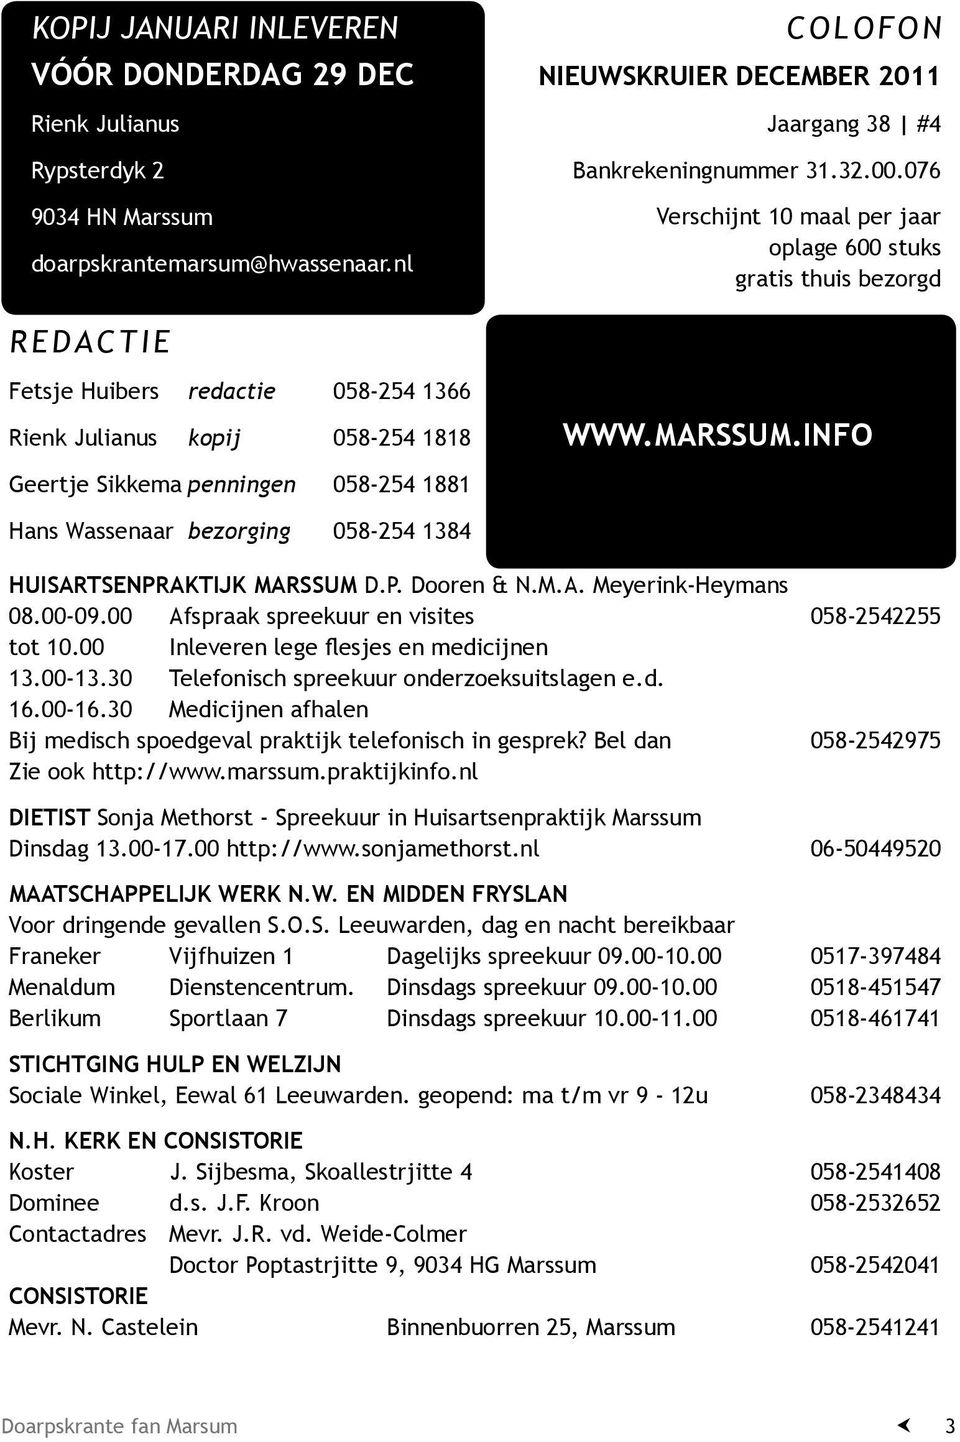 MARSSUM.INFO Hans Wassenaar bezorging 058-254 1384 HUISARTSENPRAKTIJK MARSSUM D.P. Dooren & N.M.A. Meyerink-Heymans 08.00-09.00 Afspraak spreekuur en visites 058-2542255 tot 10.